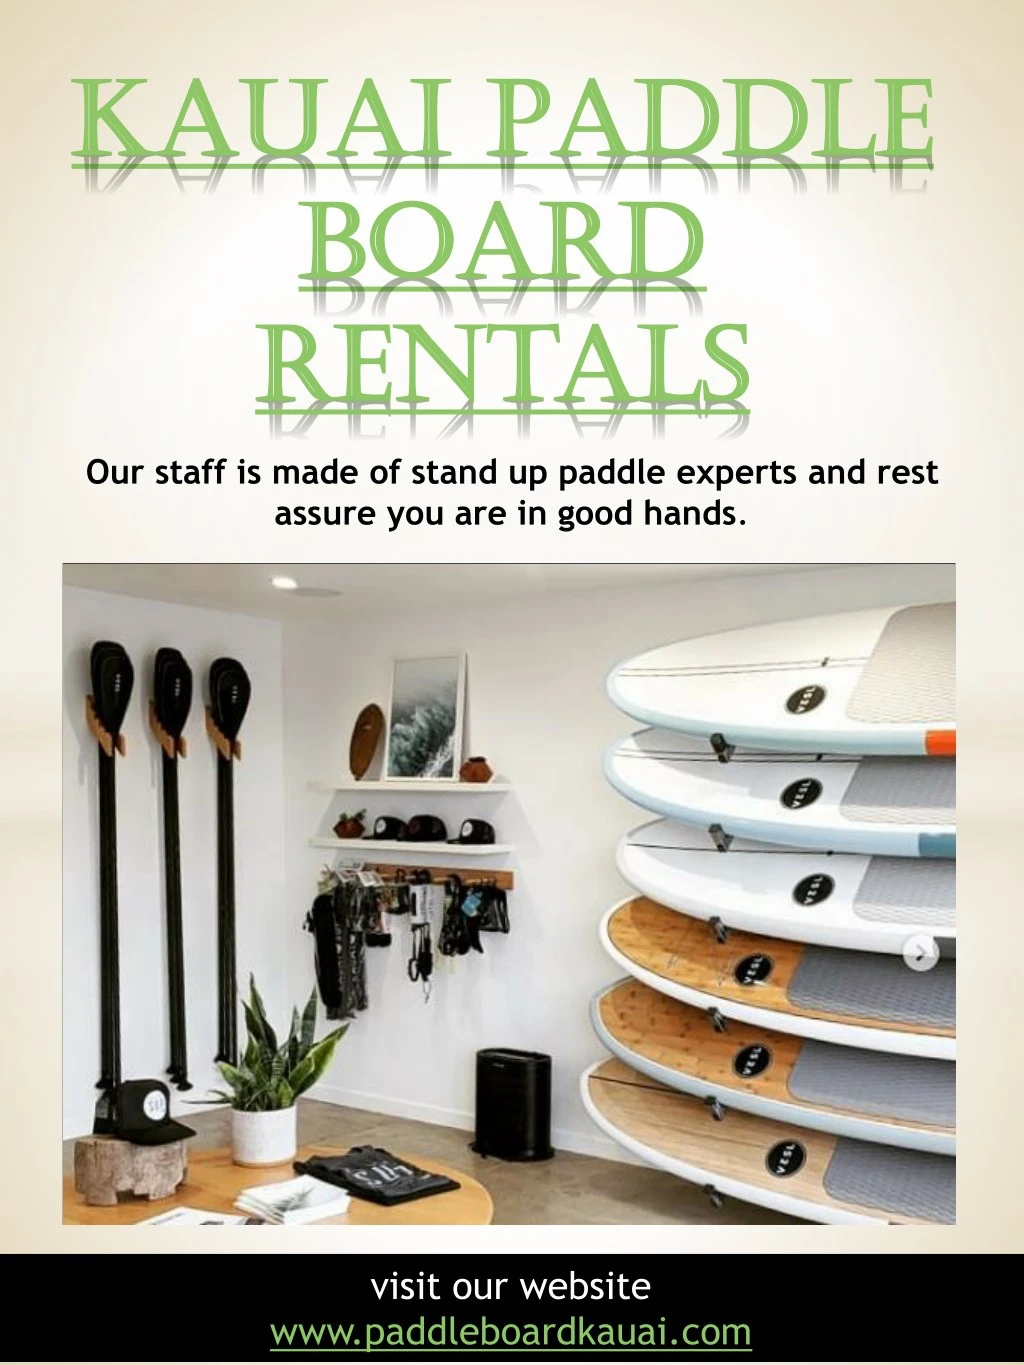 kauai paddle kauai paddle board board rentals